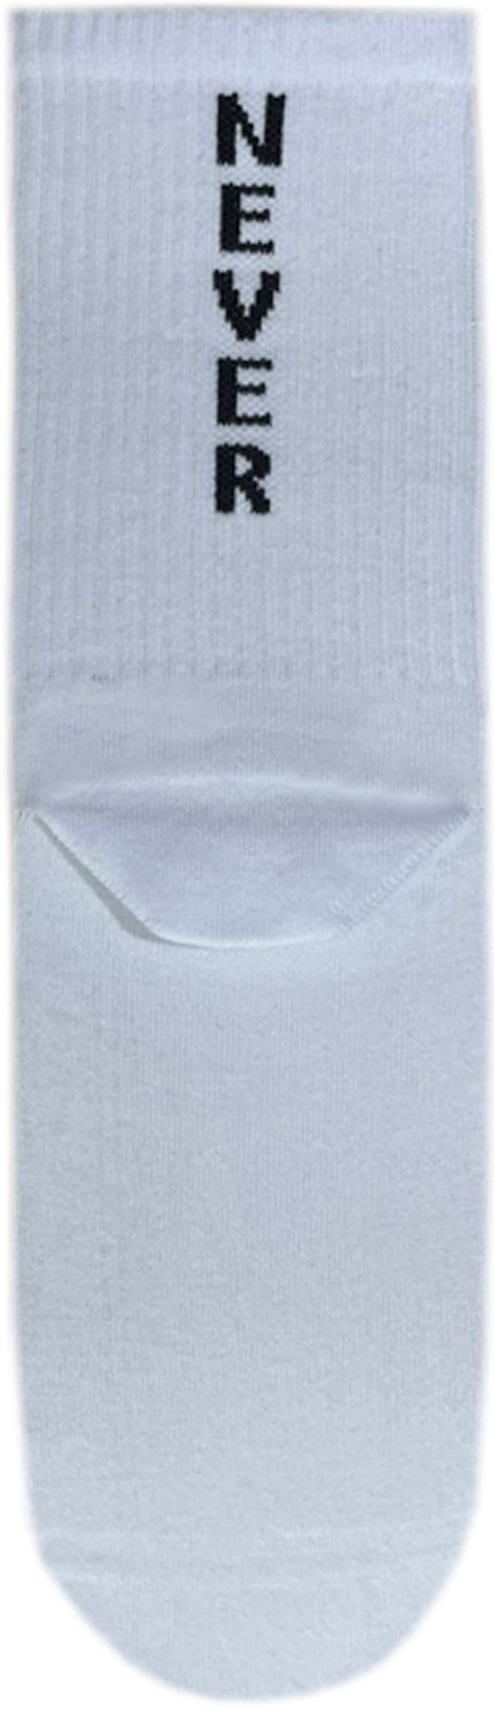 Носки мужские Premier Socks 44-45 1 пара белые с принтом (4820163317939) фото 2